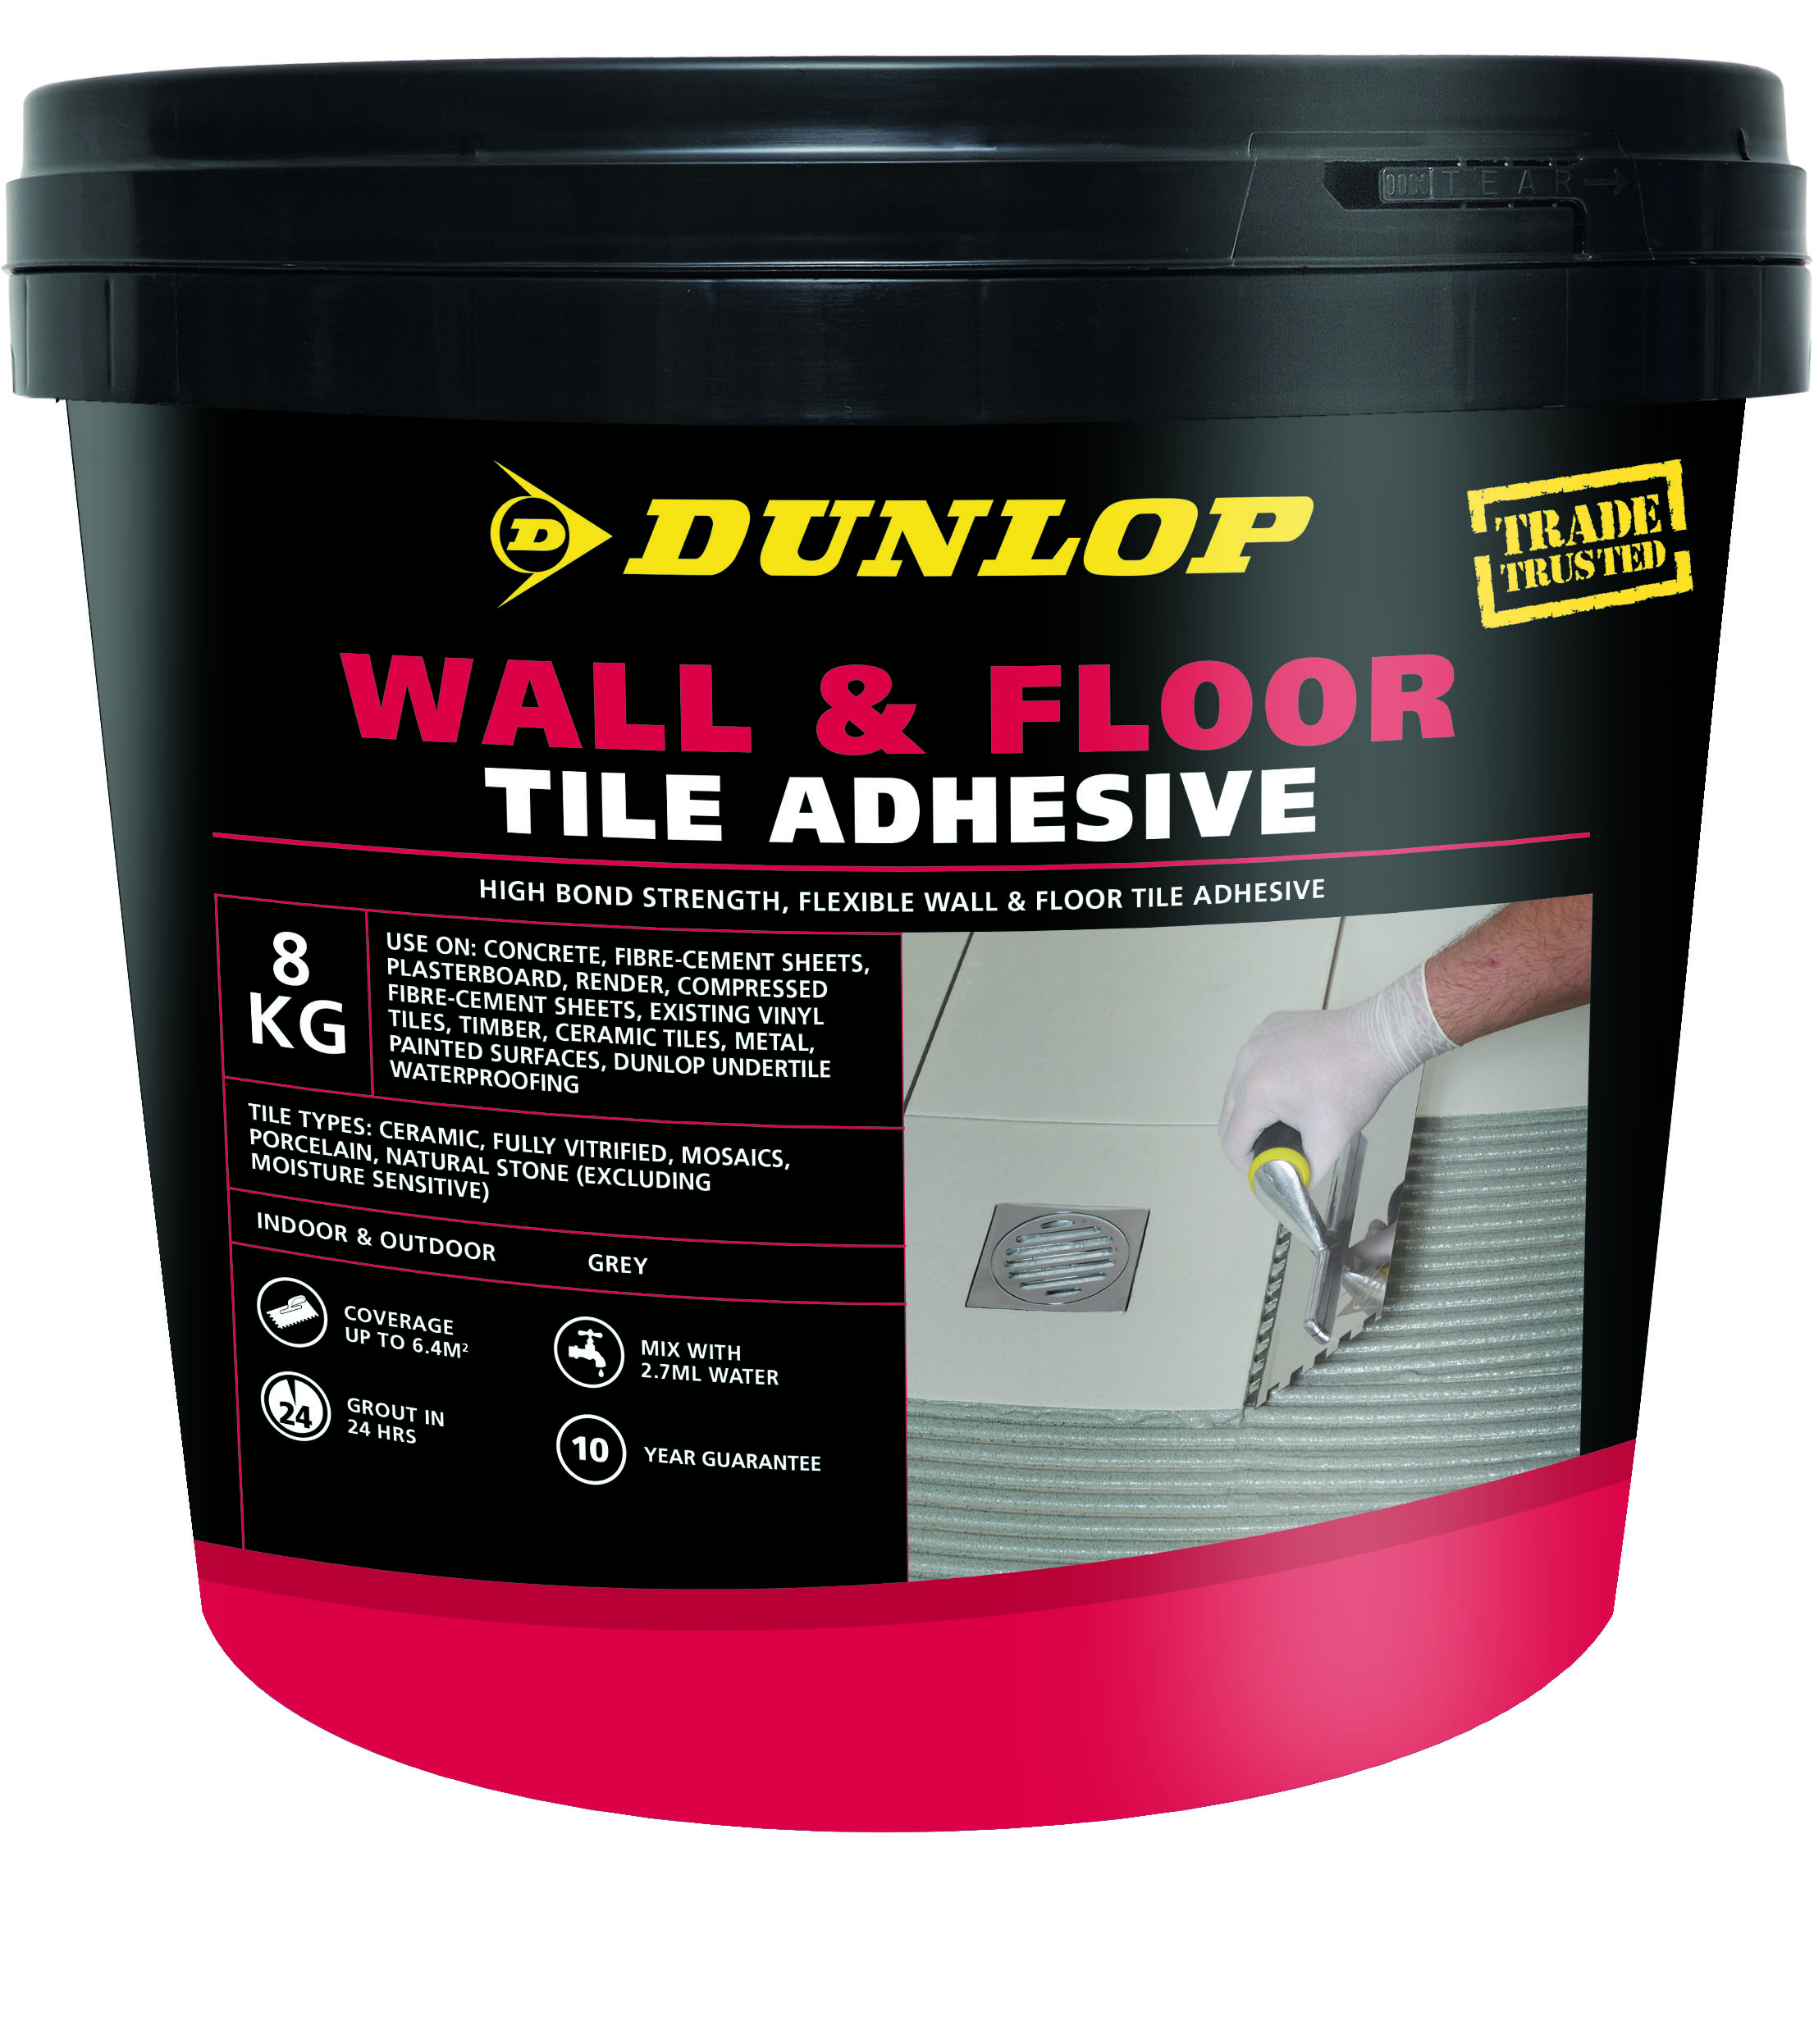 Dunlop Wall & Floor Tile Adhesive – Dunlop Trade NZ